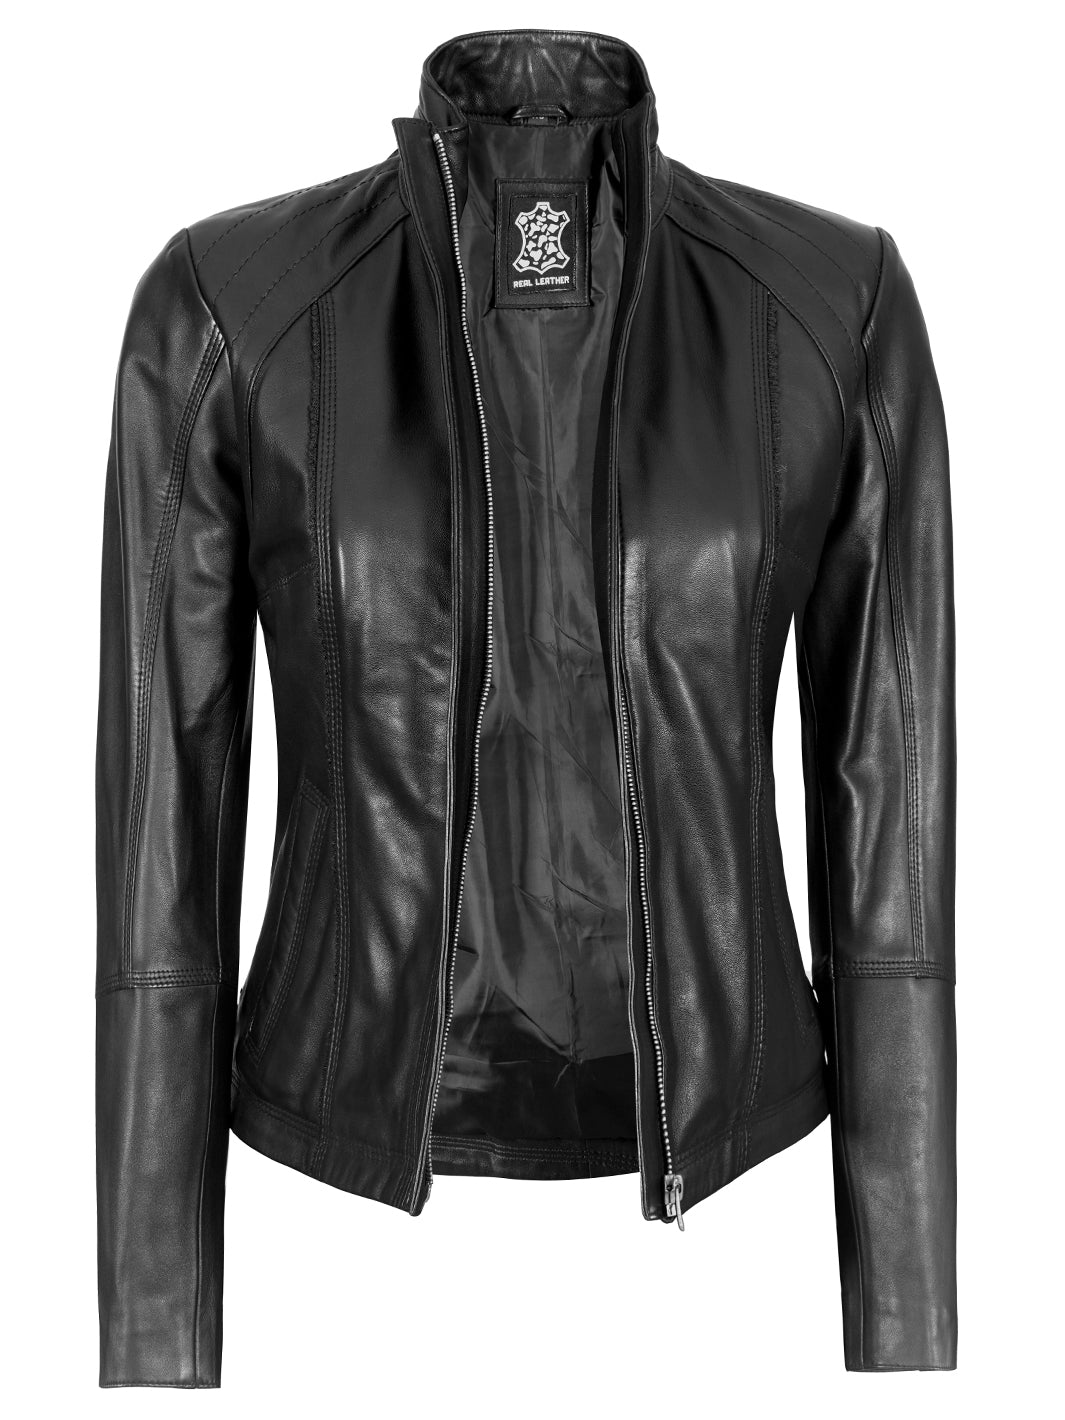 Biker Leather Jacket Women